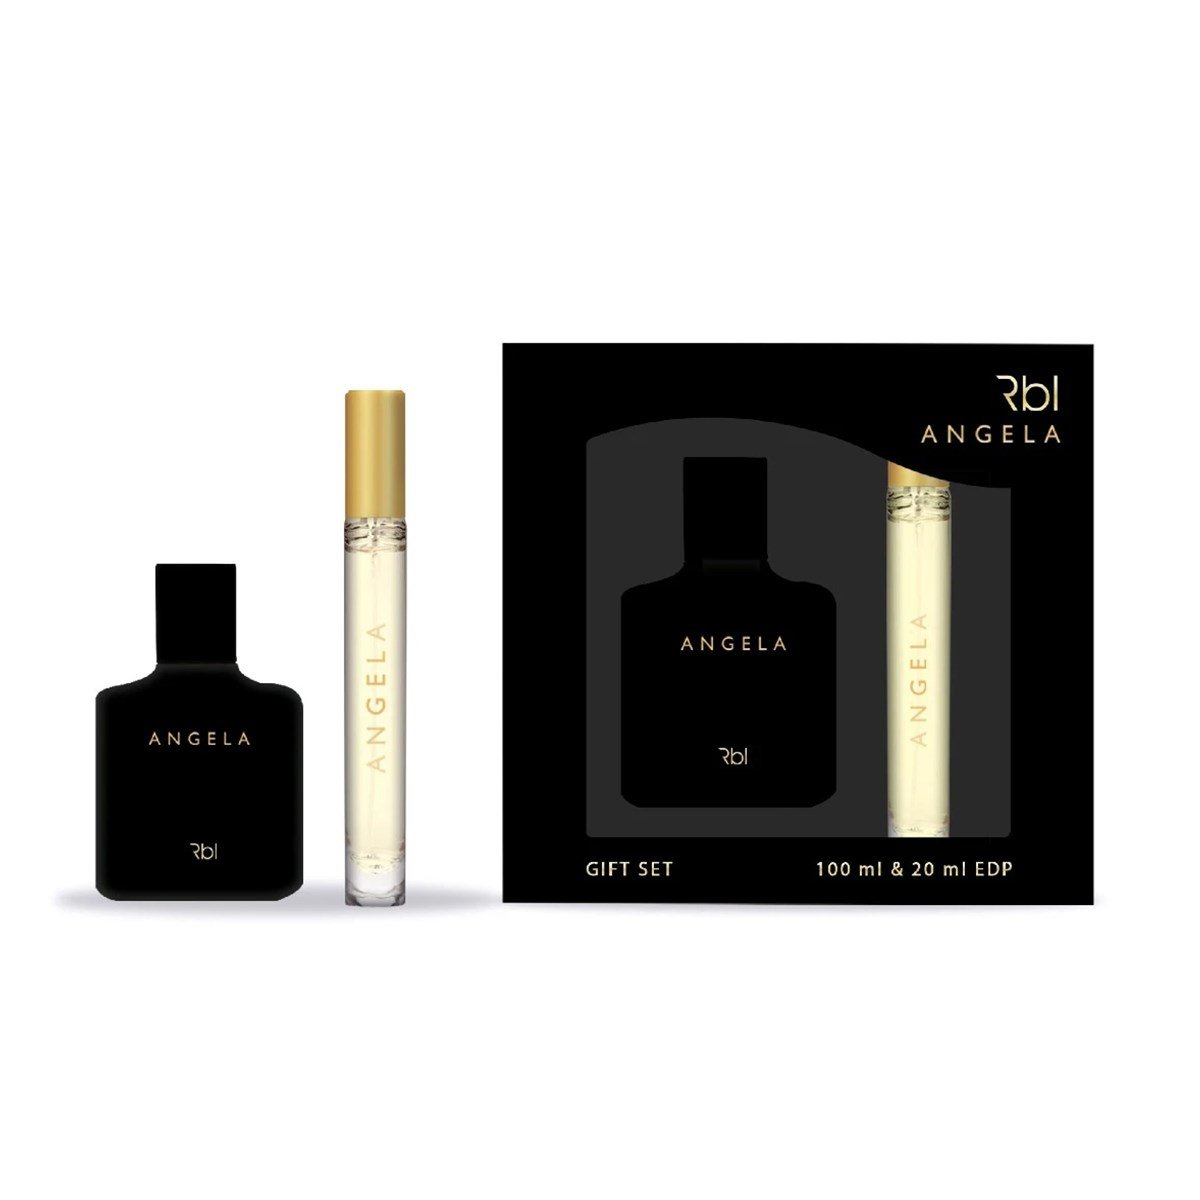 Rebul Angela EDT 100ML + 20ML Kadın Parfüm Seti - Kampanya, İndirim